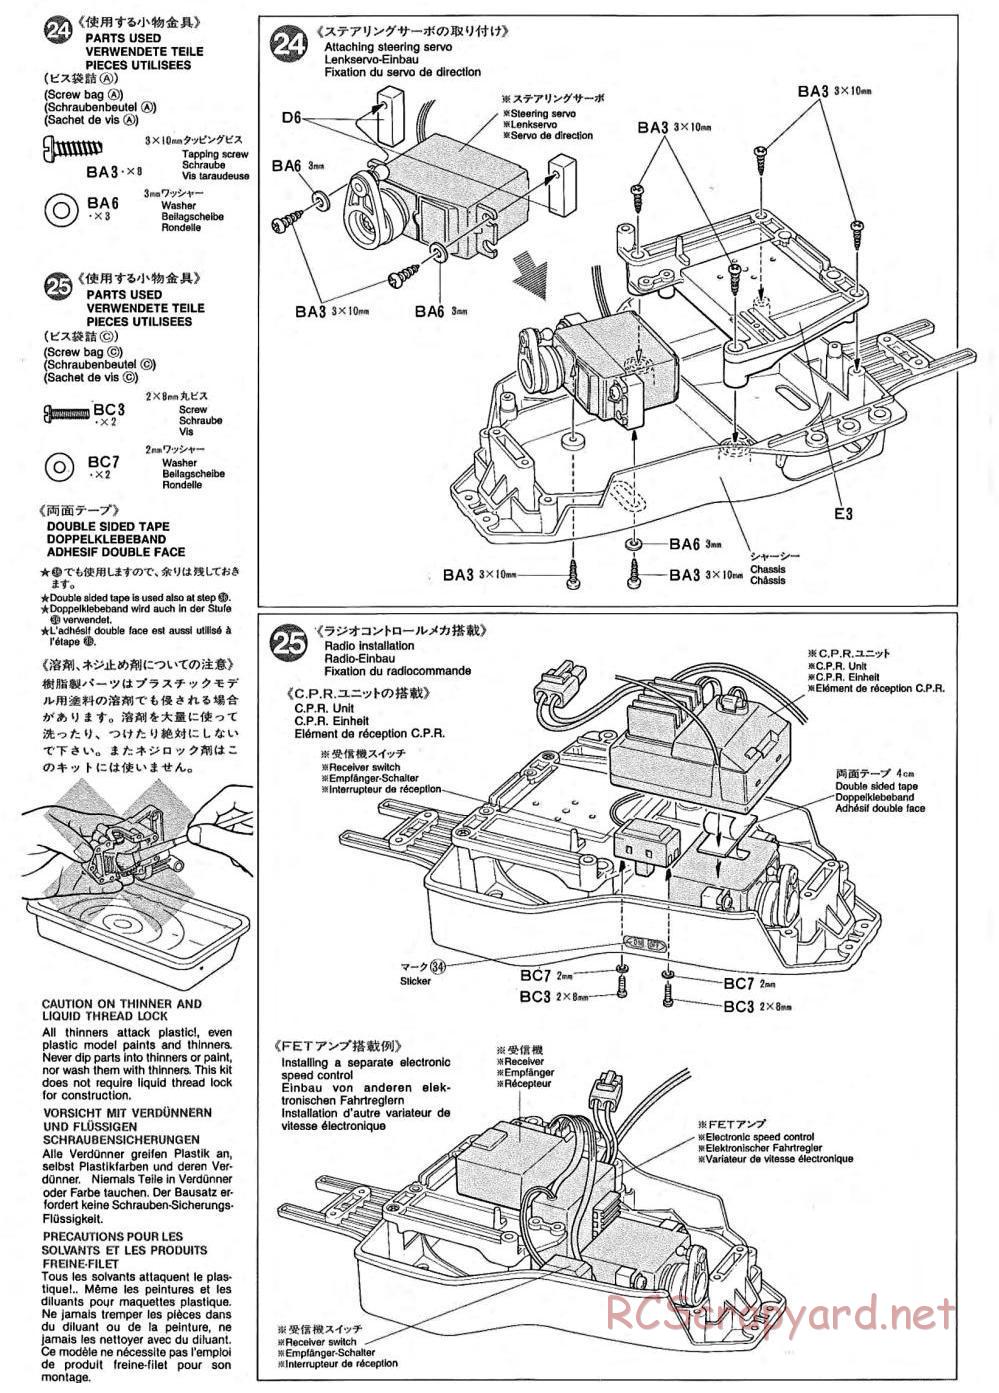 Tamiya - TA-02 Chassis - Manual - Page 9